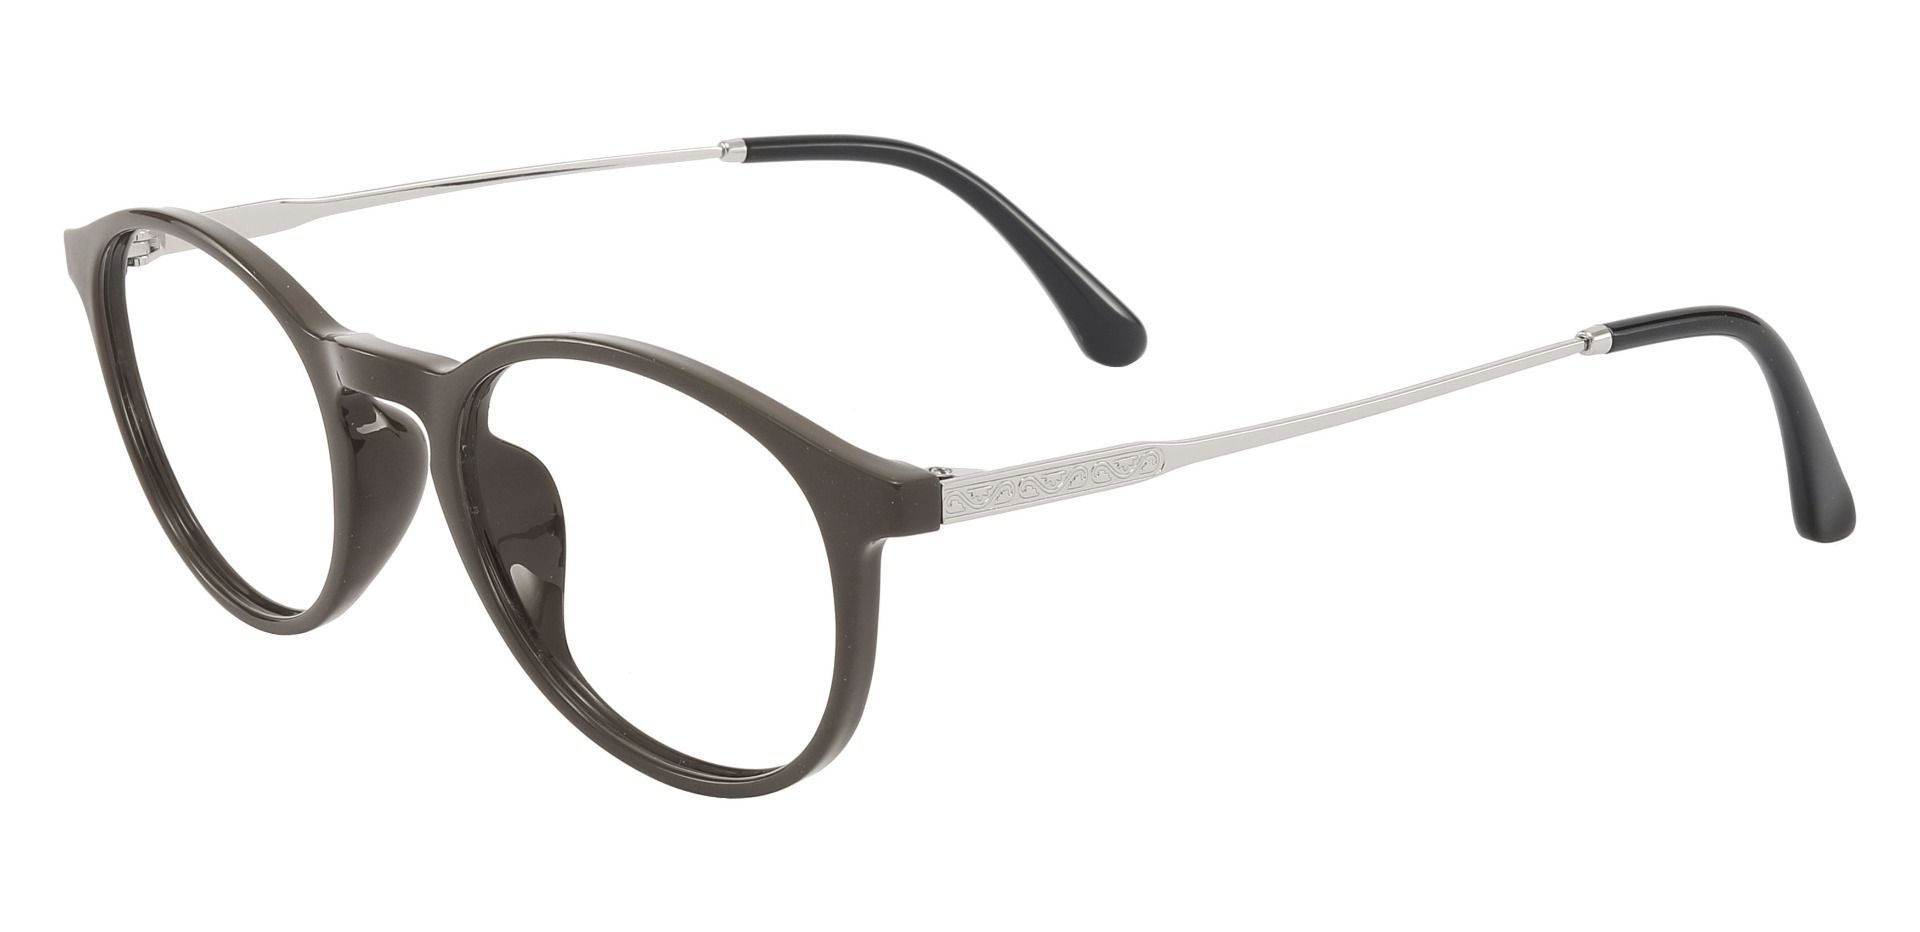 Babylon Oval Non-Rx Glasses - Gray